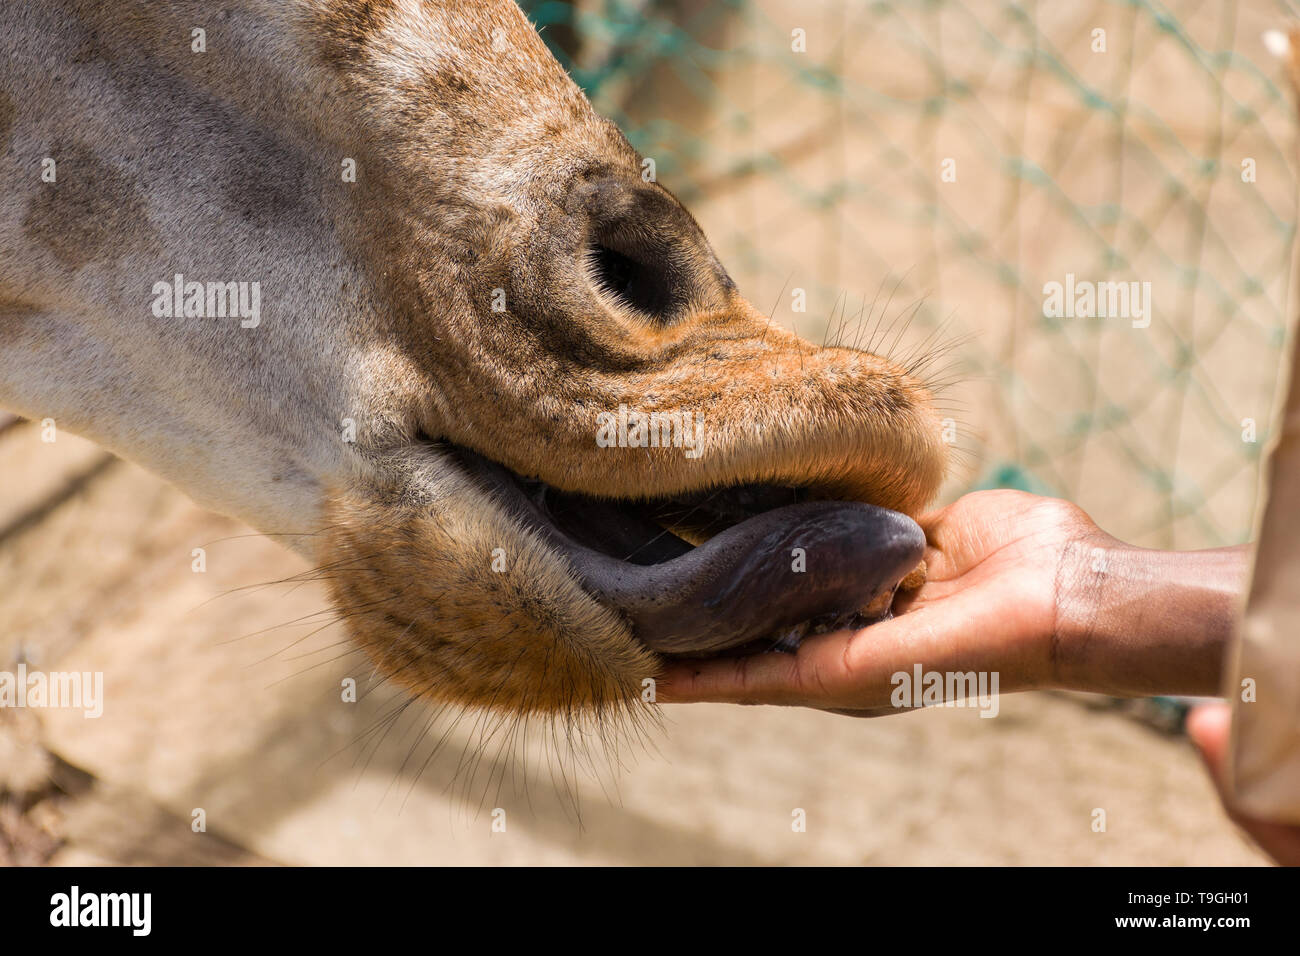 Jirafa de Rothschild (Giraffa camelopardalis rothschildi) siendo alimentados a mano bolitas de alimentos Foto de stock